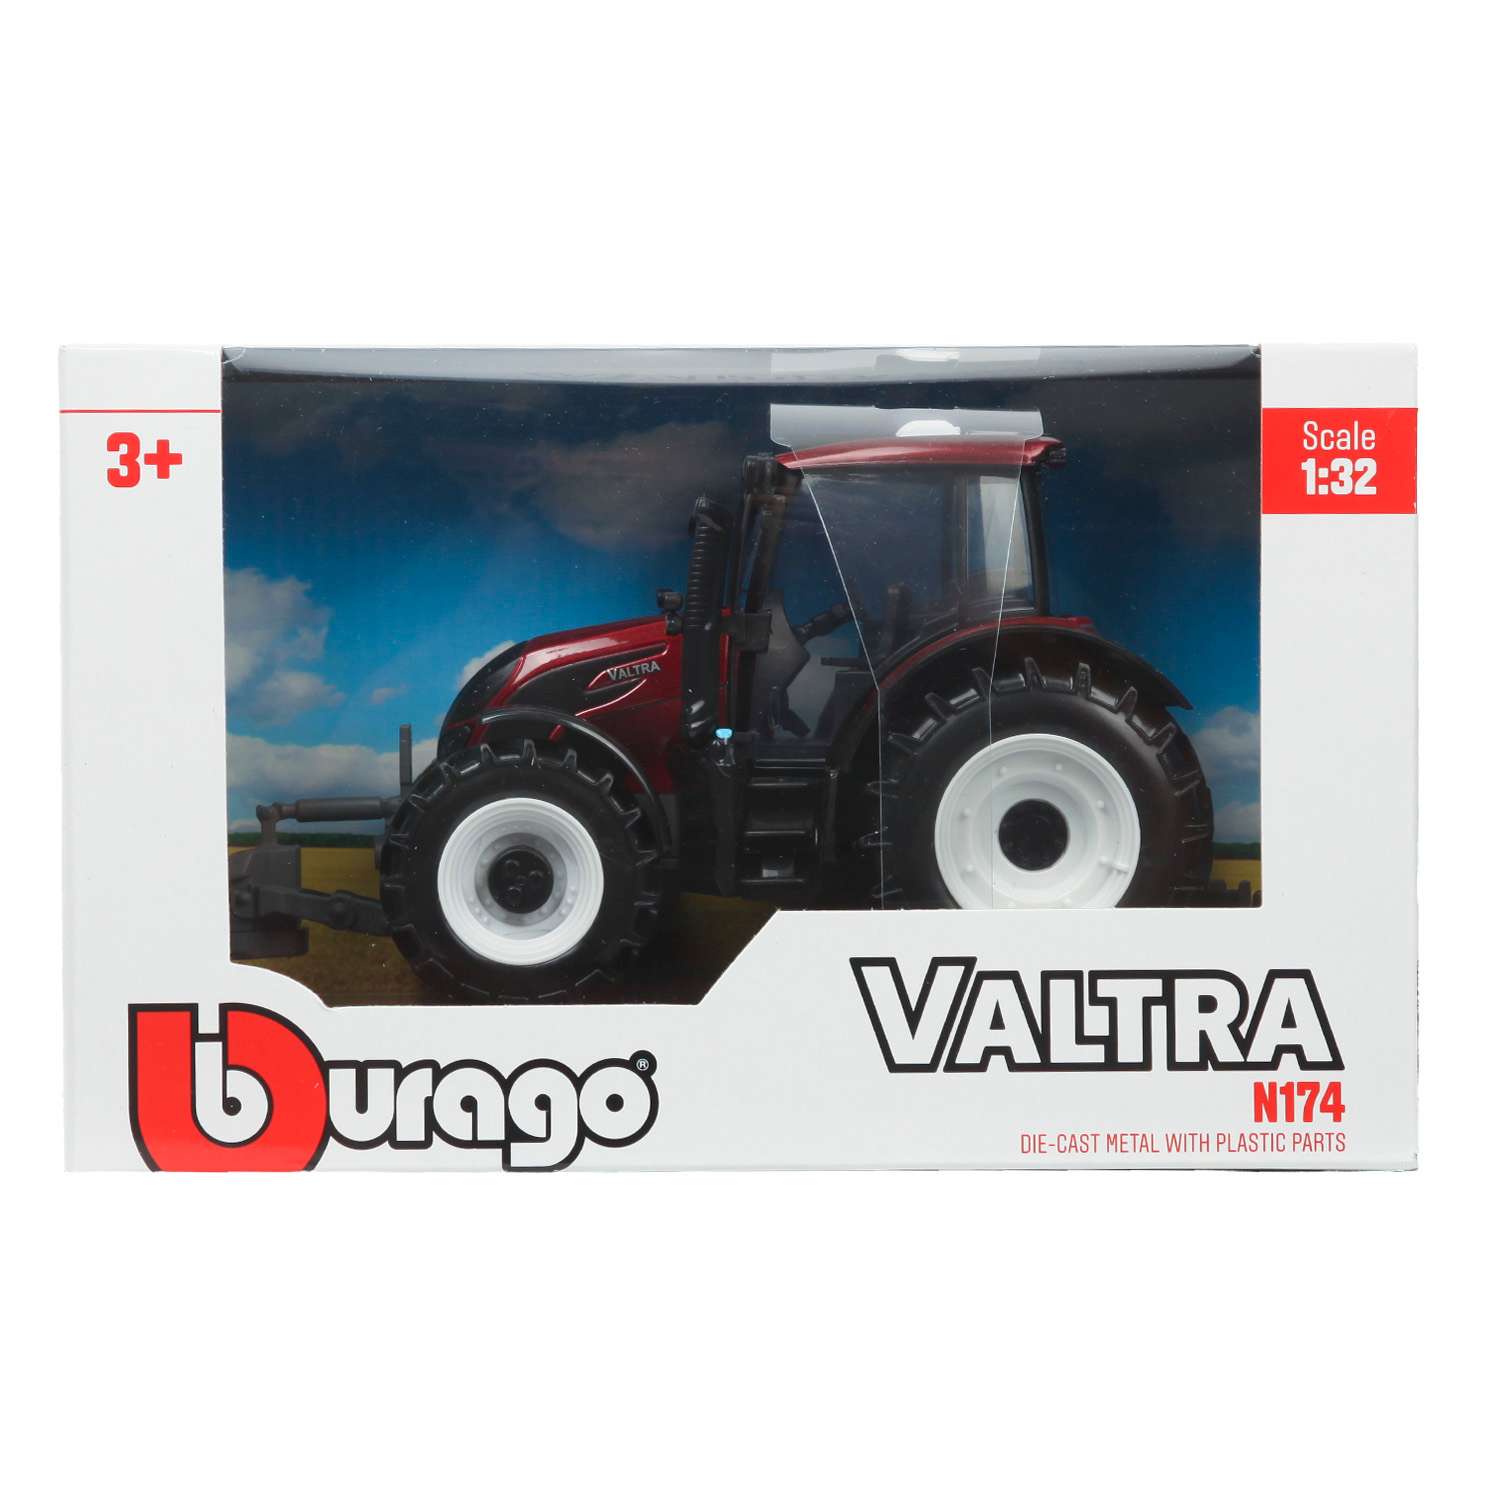 Трактор BBurago 1:32 Valtra N174 Красный 18-44071 18-44071 - фото 2